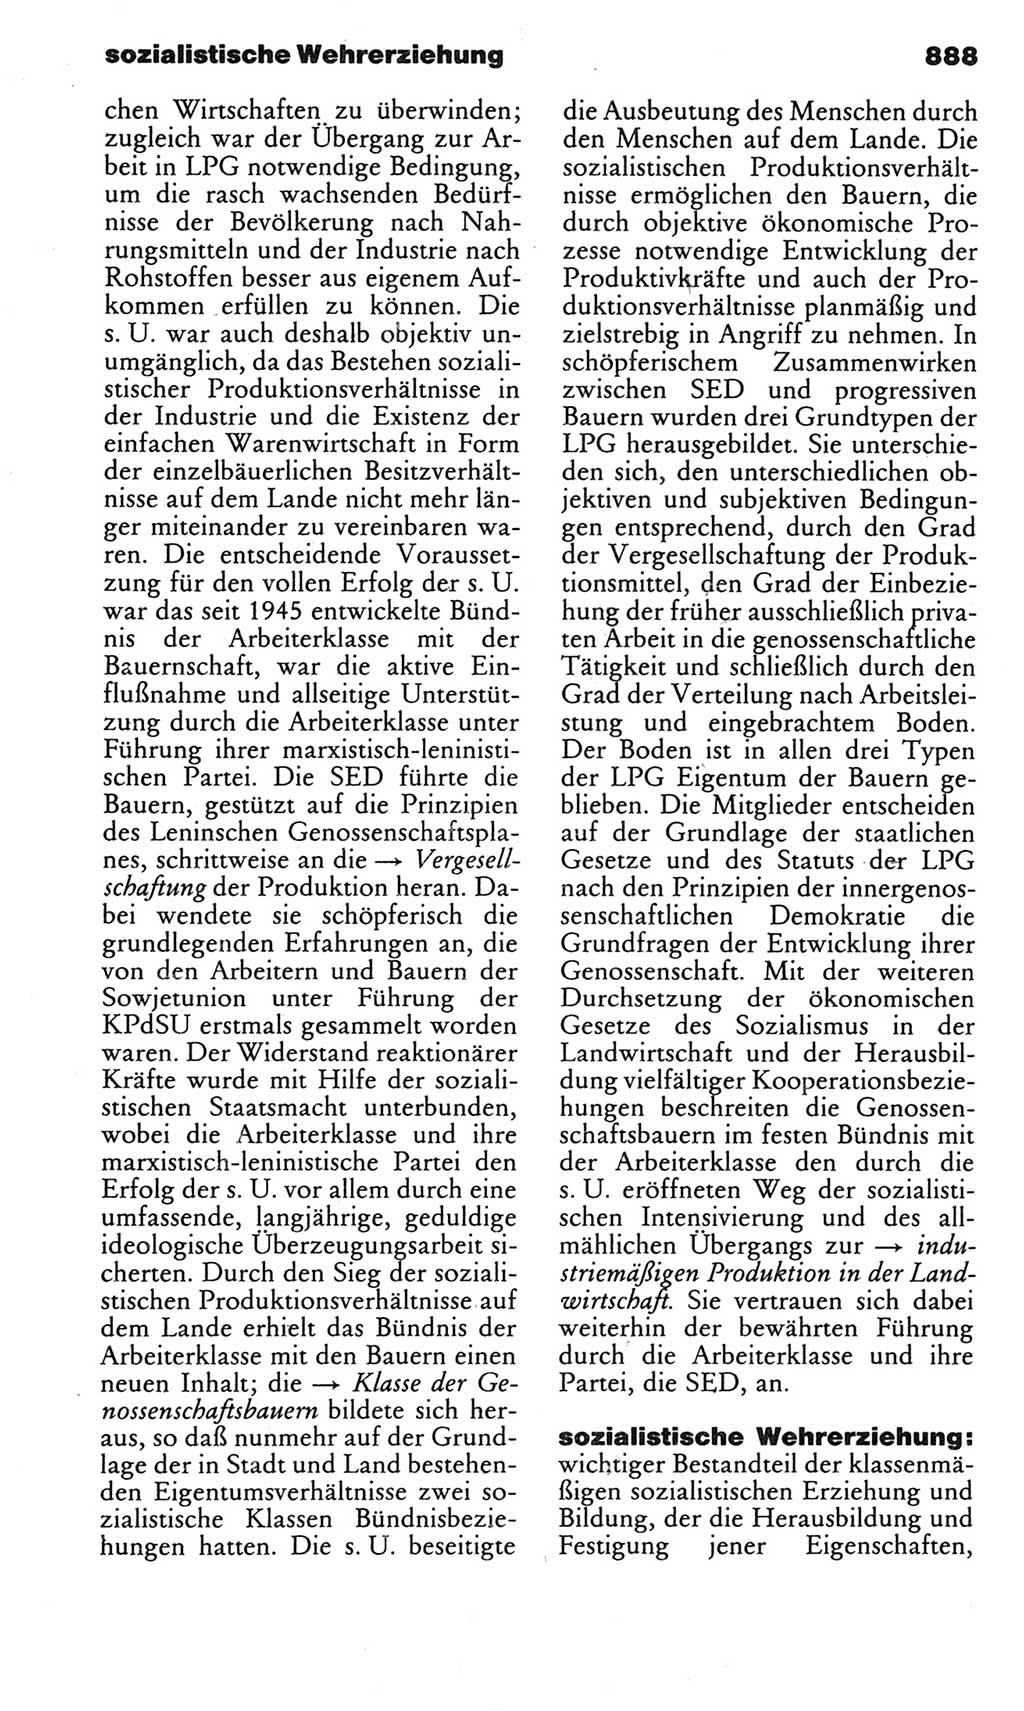 Kleines politisches Wörterbuch [Deutsche Demokratische Republik (DDR)] 1983, Seite 888 (Kl. pol. Wb. DDR 1983, S. 888)